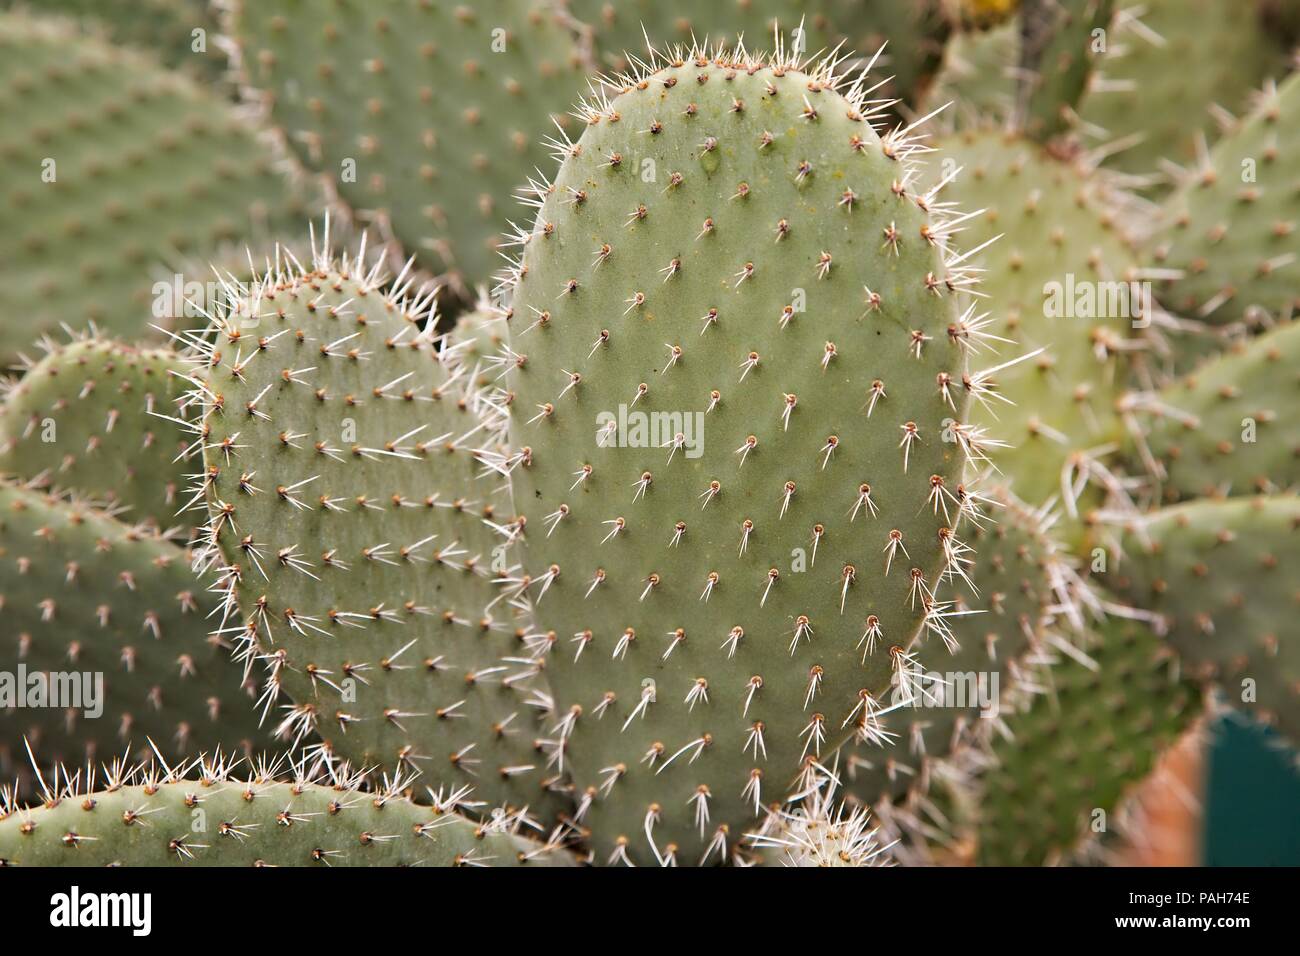 Cactus dettaglio di impianto Foto Stock